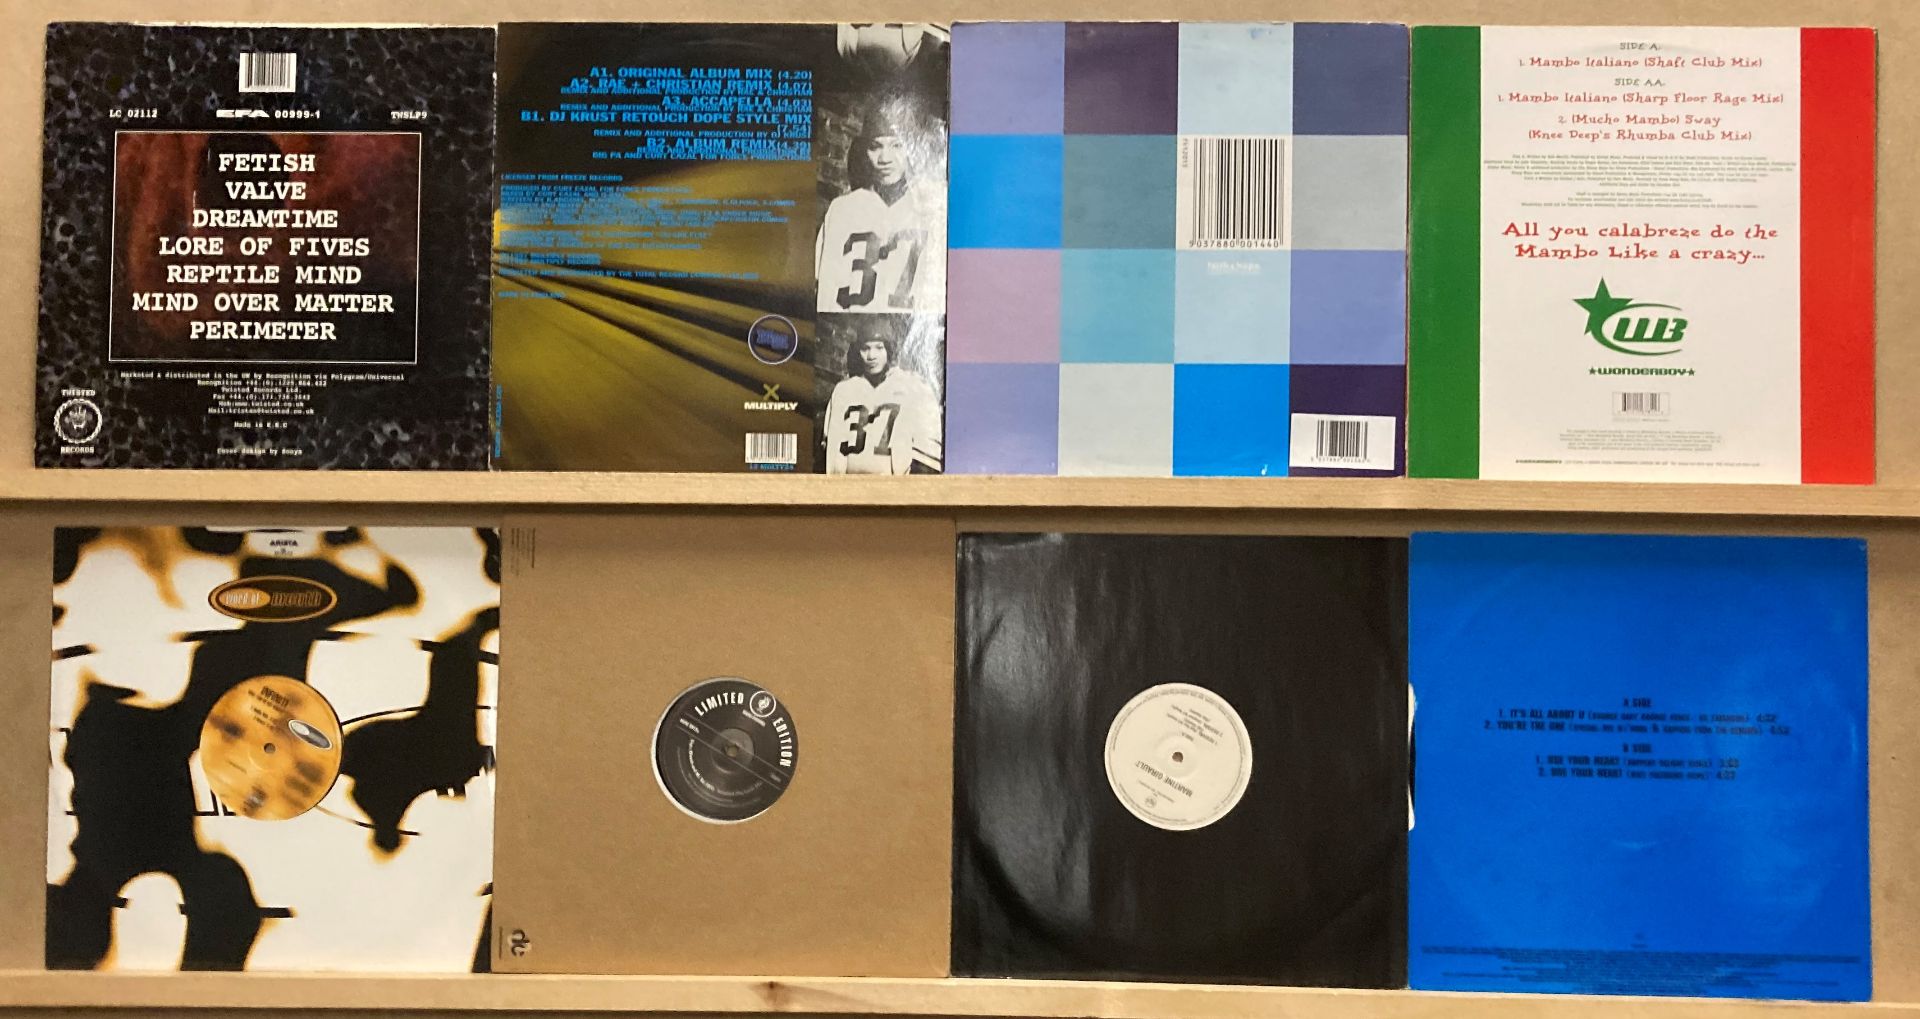 8 X 12” Vinyl - 1 X Tristan Audiodrome, 1 X Mama Mystique Tremendous, - Image 2 of 2